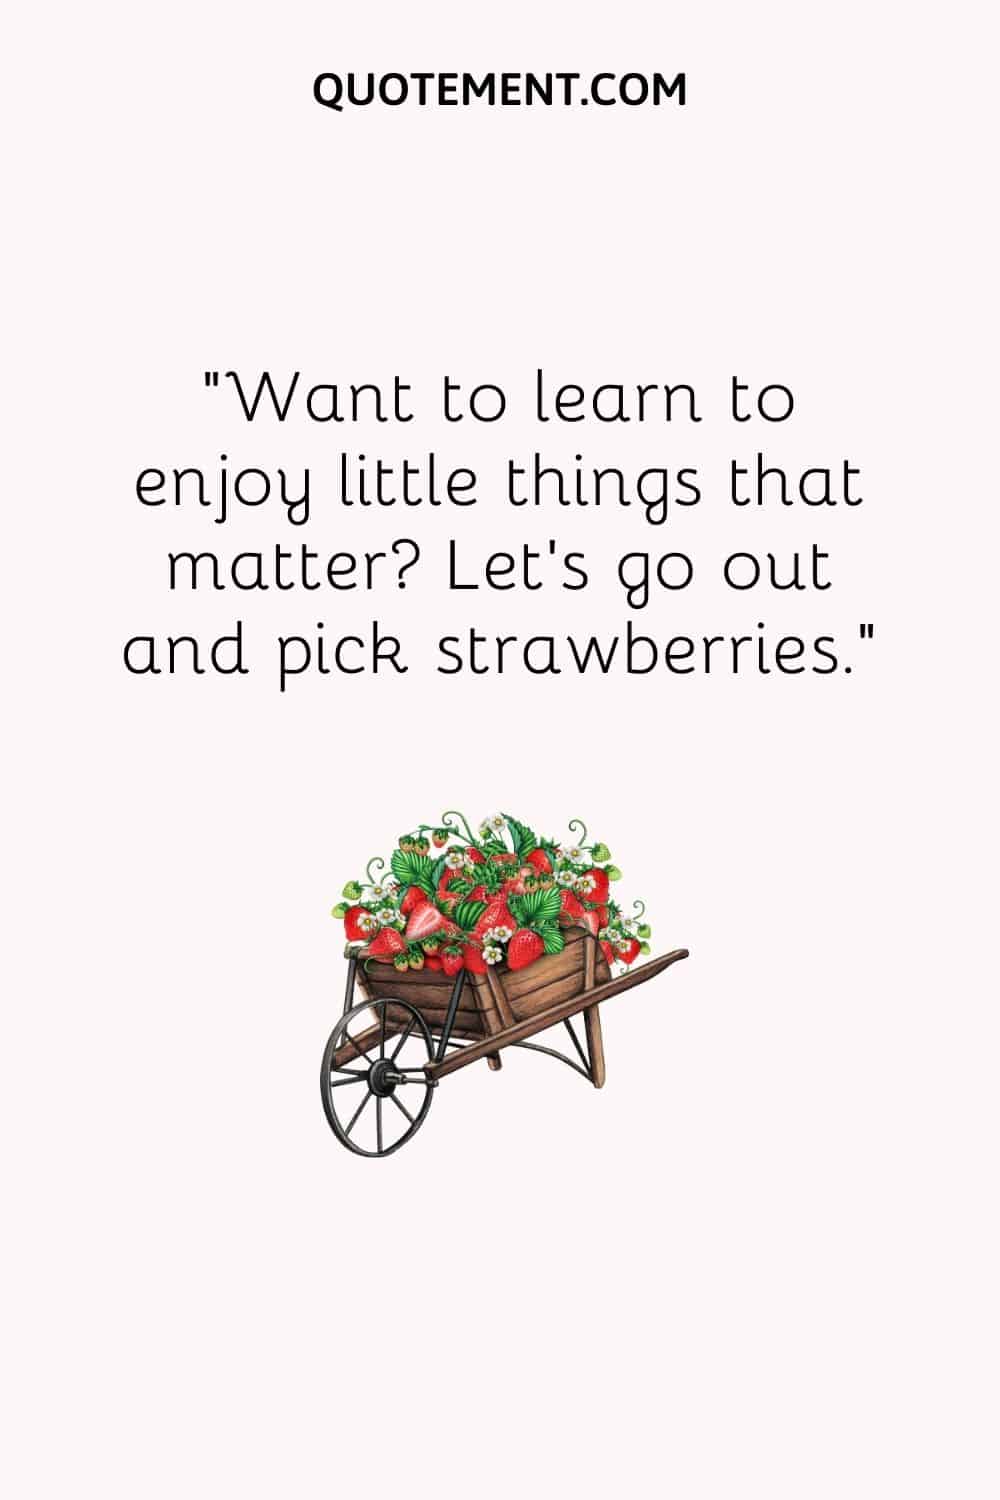 Quieres aprender a disfrutar de las pequeñas cosas que importan Salgamos a recoger fresas